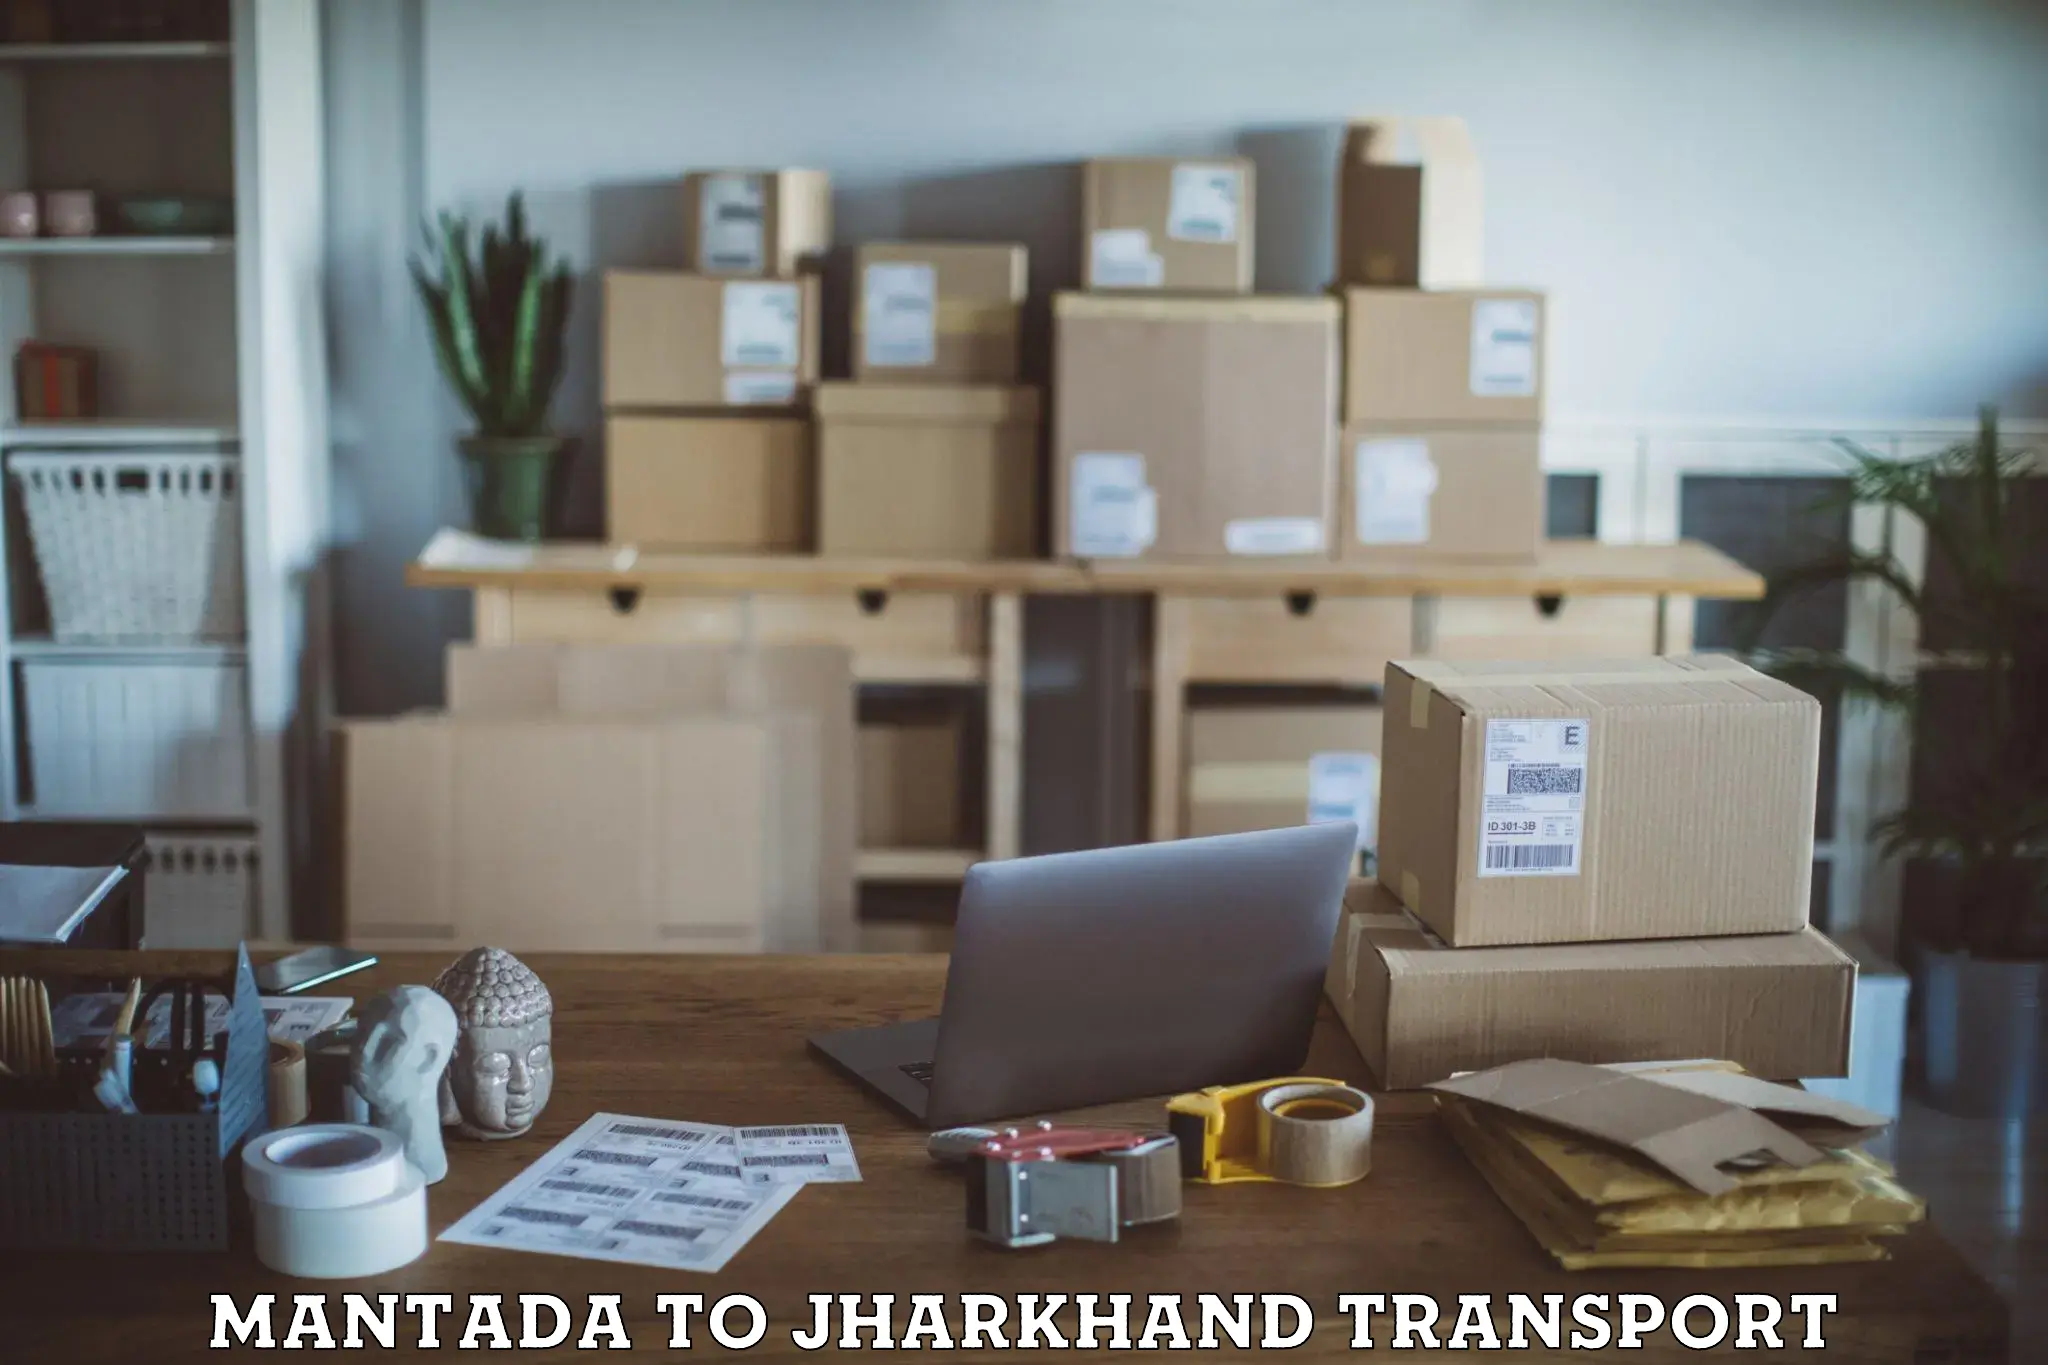 Shipping services Mantada to Padma Hazaribagh